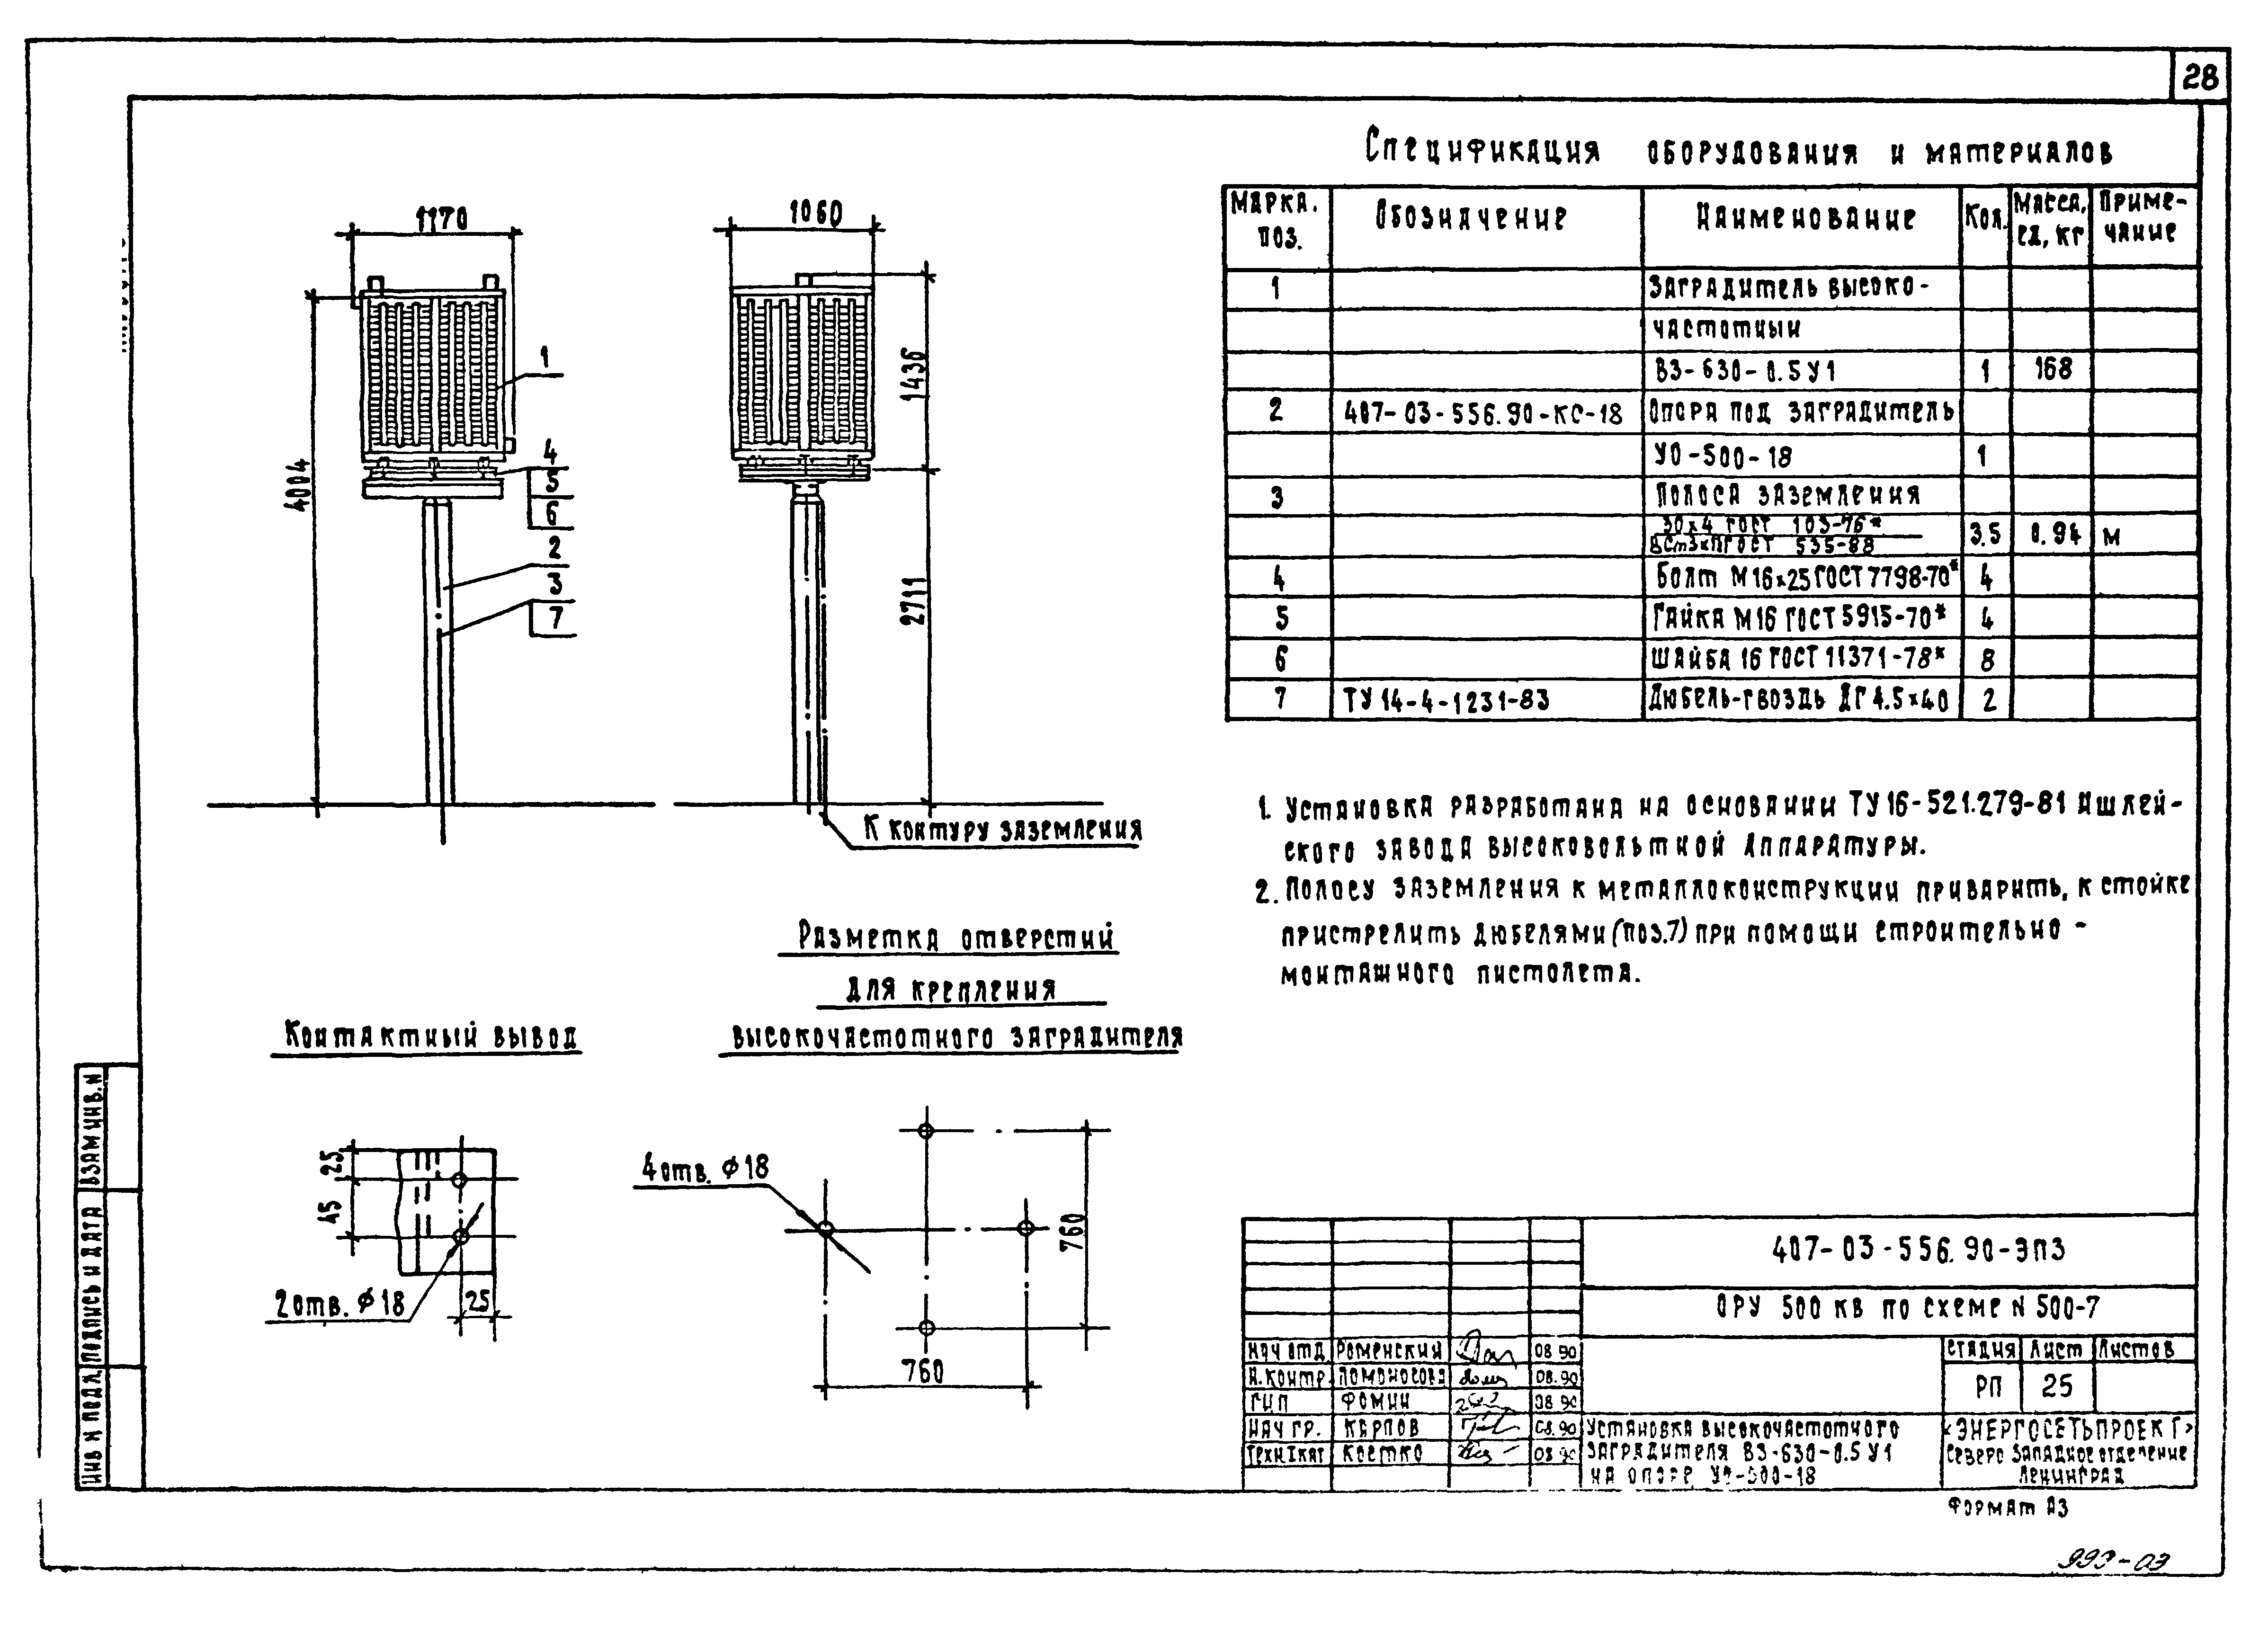 Типовые материалы для проектирования 407-03-558.90